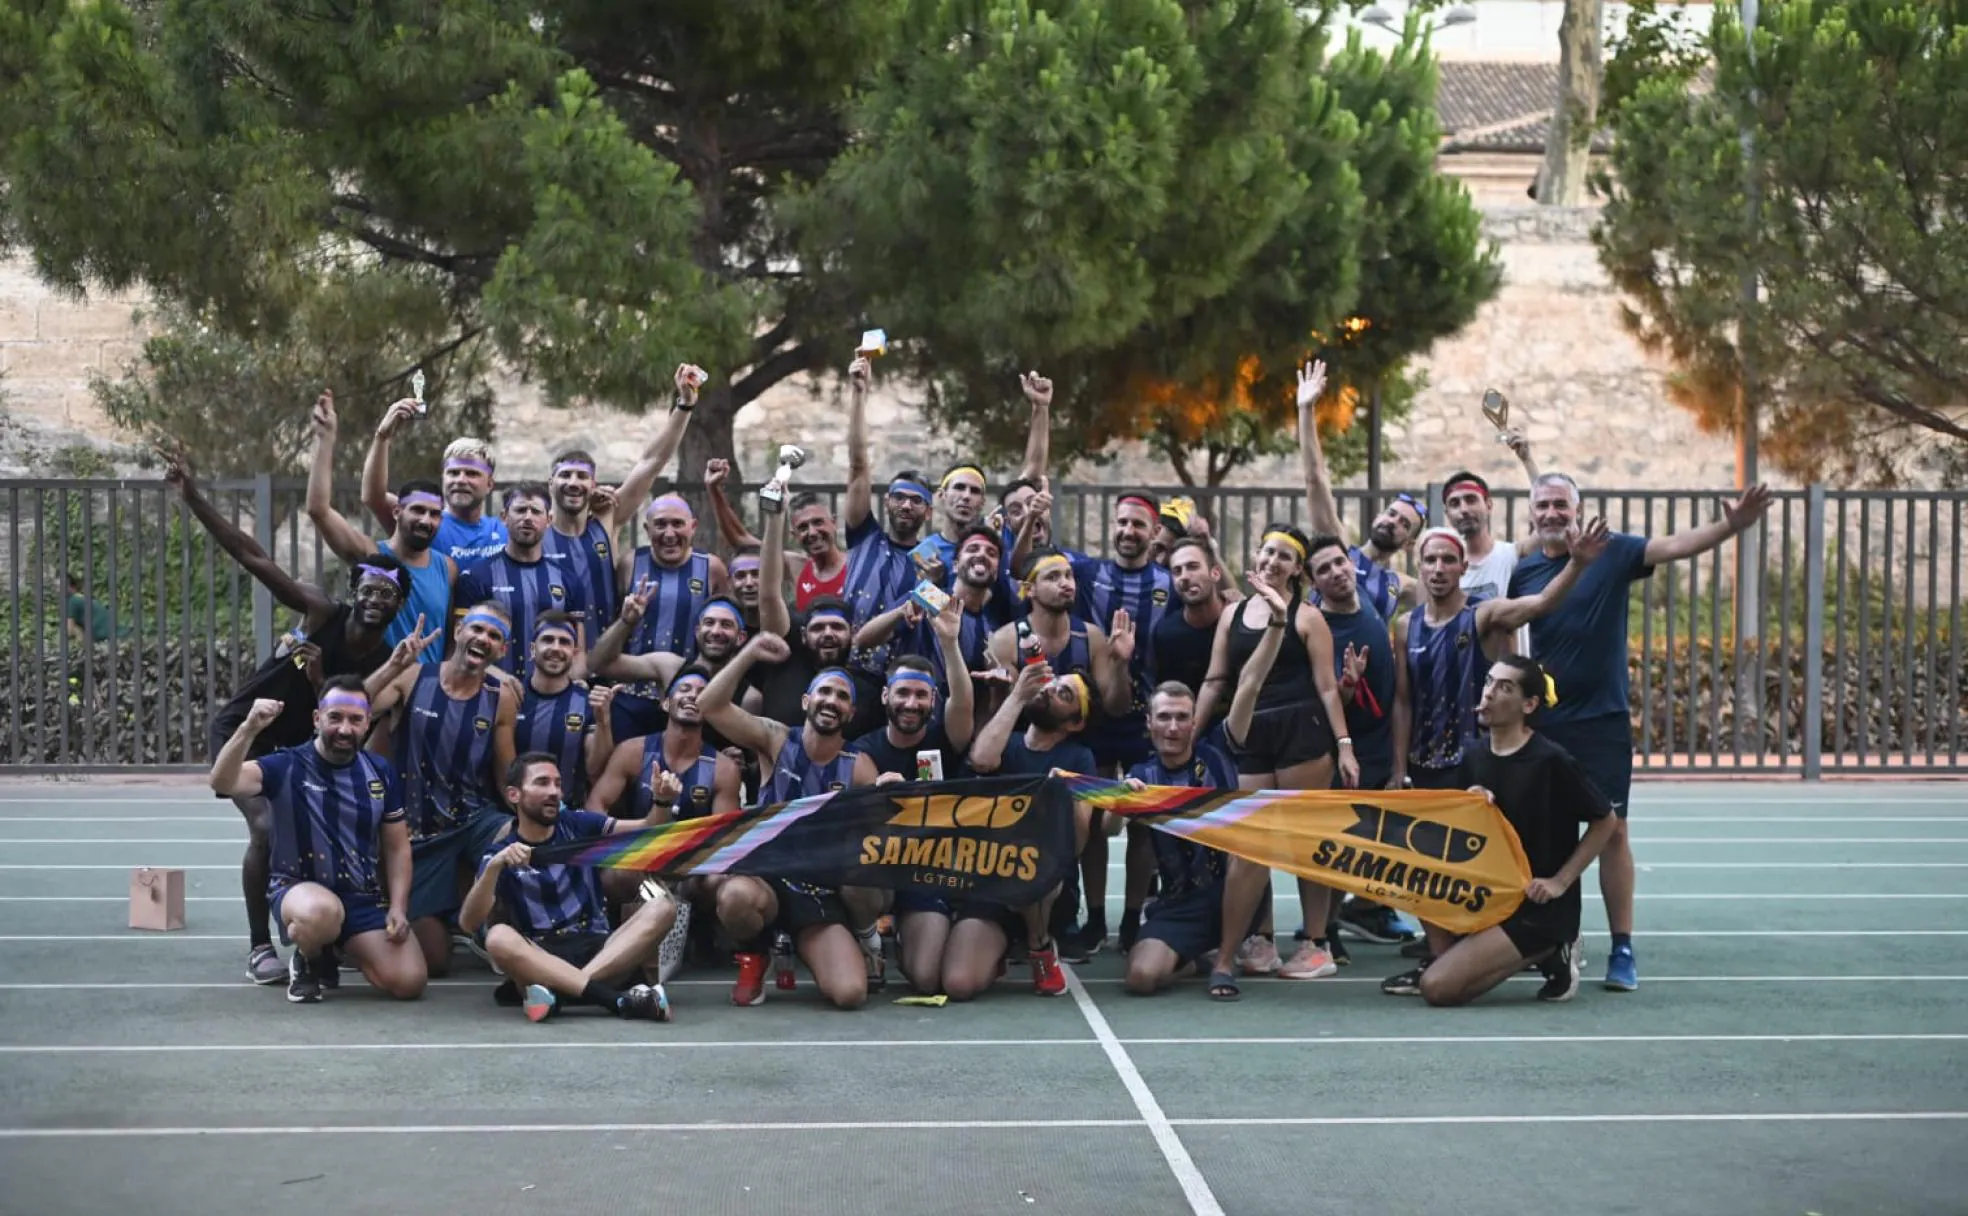 Clubes de atletismo en Valencia | Las carreras no tienen género: Samarucs  Running, un club inclusivo y multicultural | Las Provincias